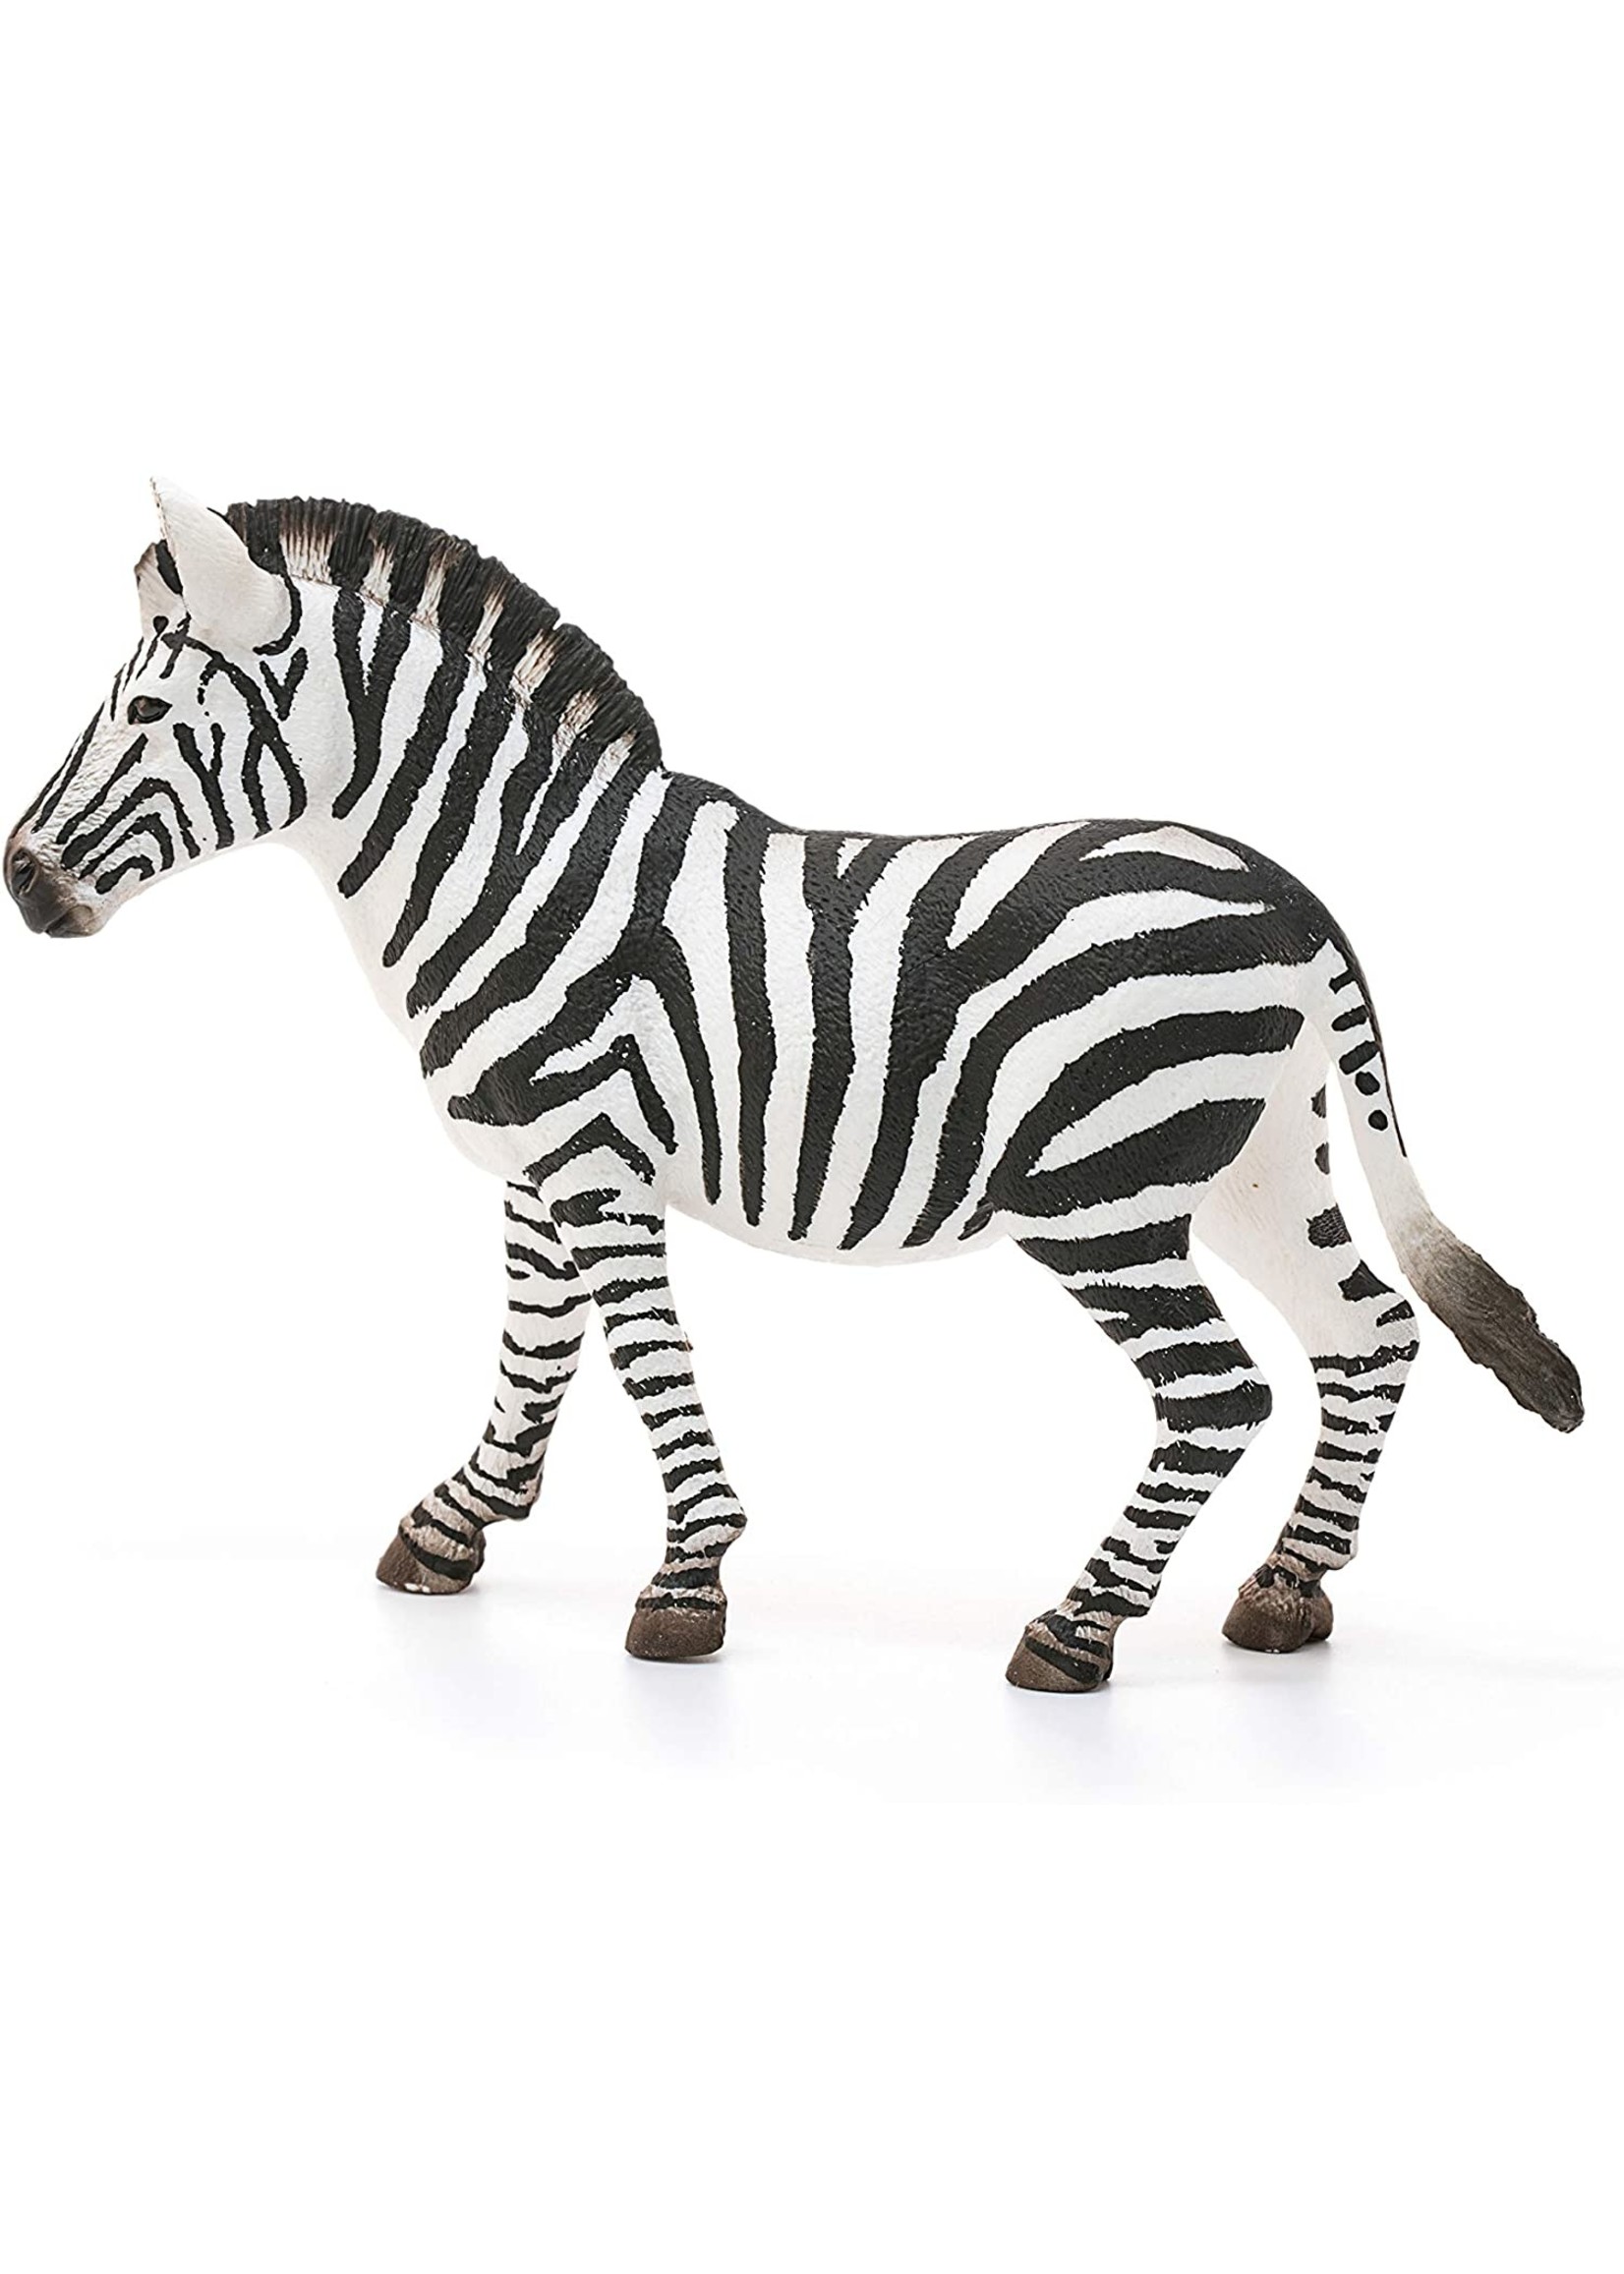 Schleich 14810 - Zebra, Female